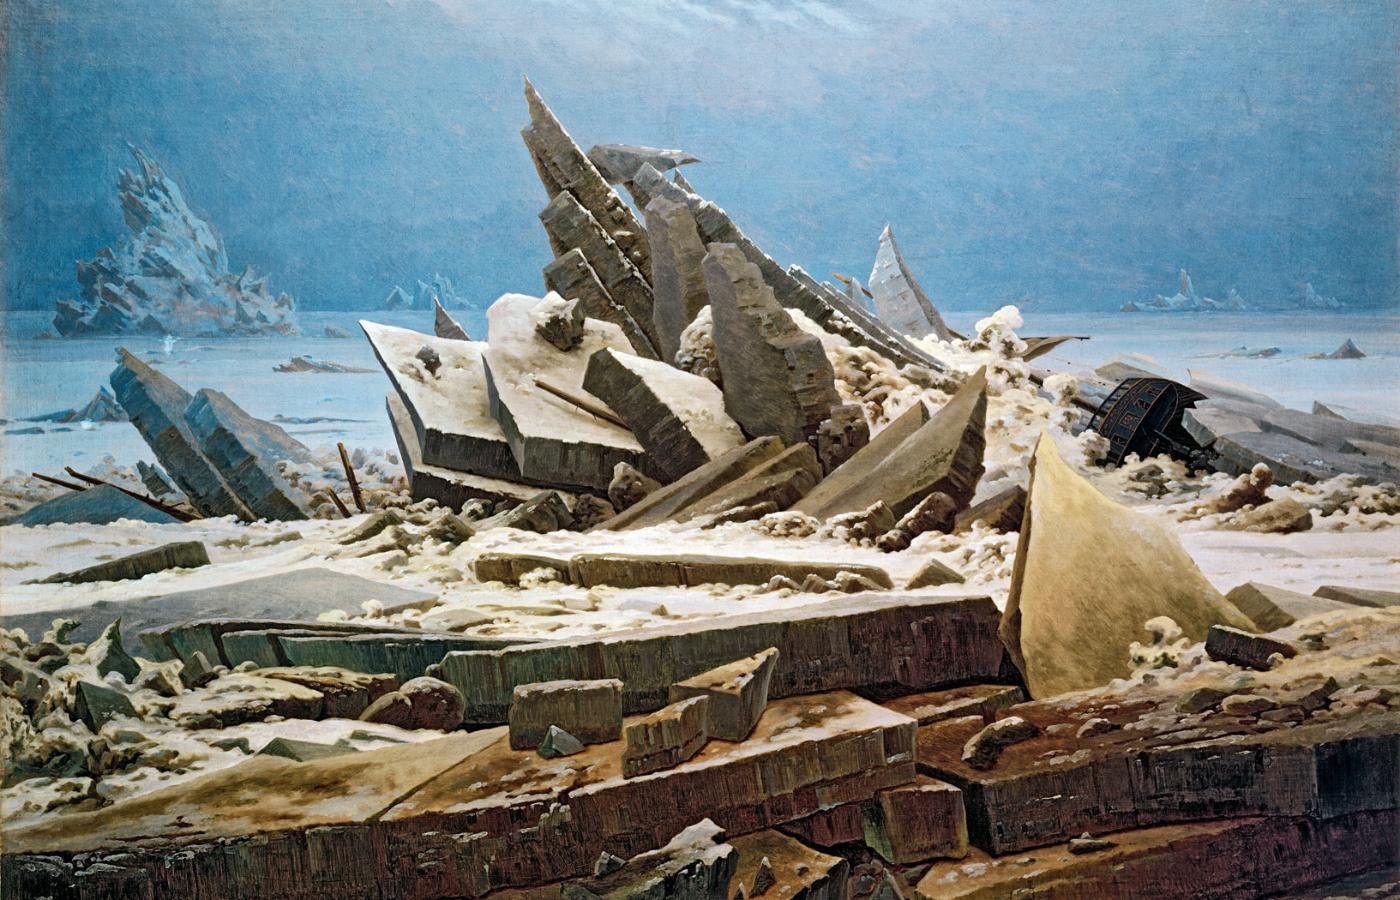 Tragiczny finał polarnej ekspedycji na obrazie „Morze lodu” Caspara Davida Friedricha, 1823-24 r.